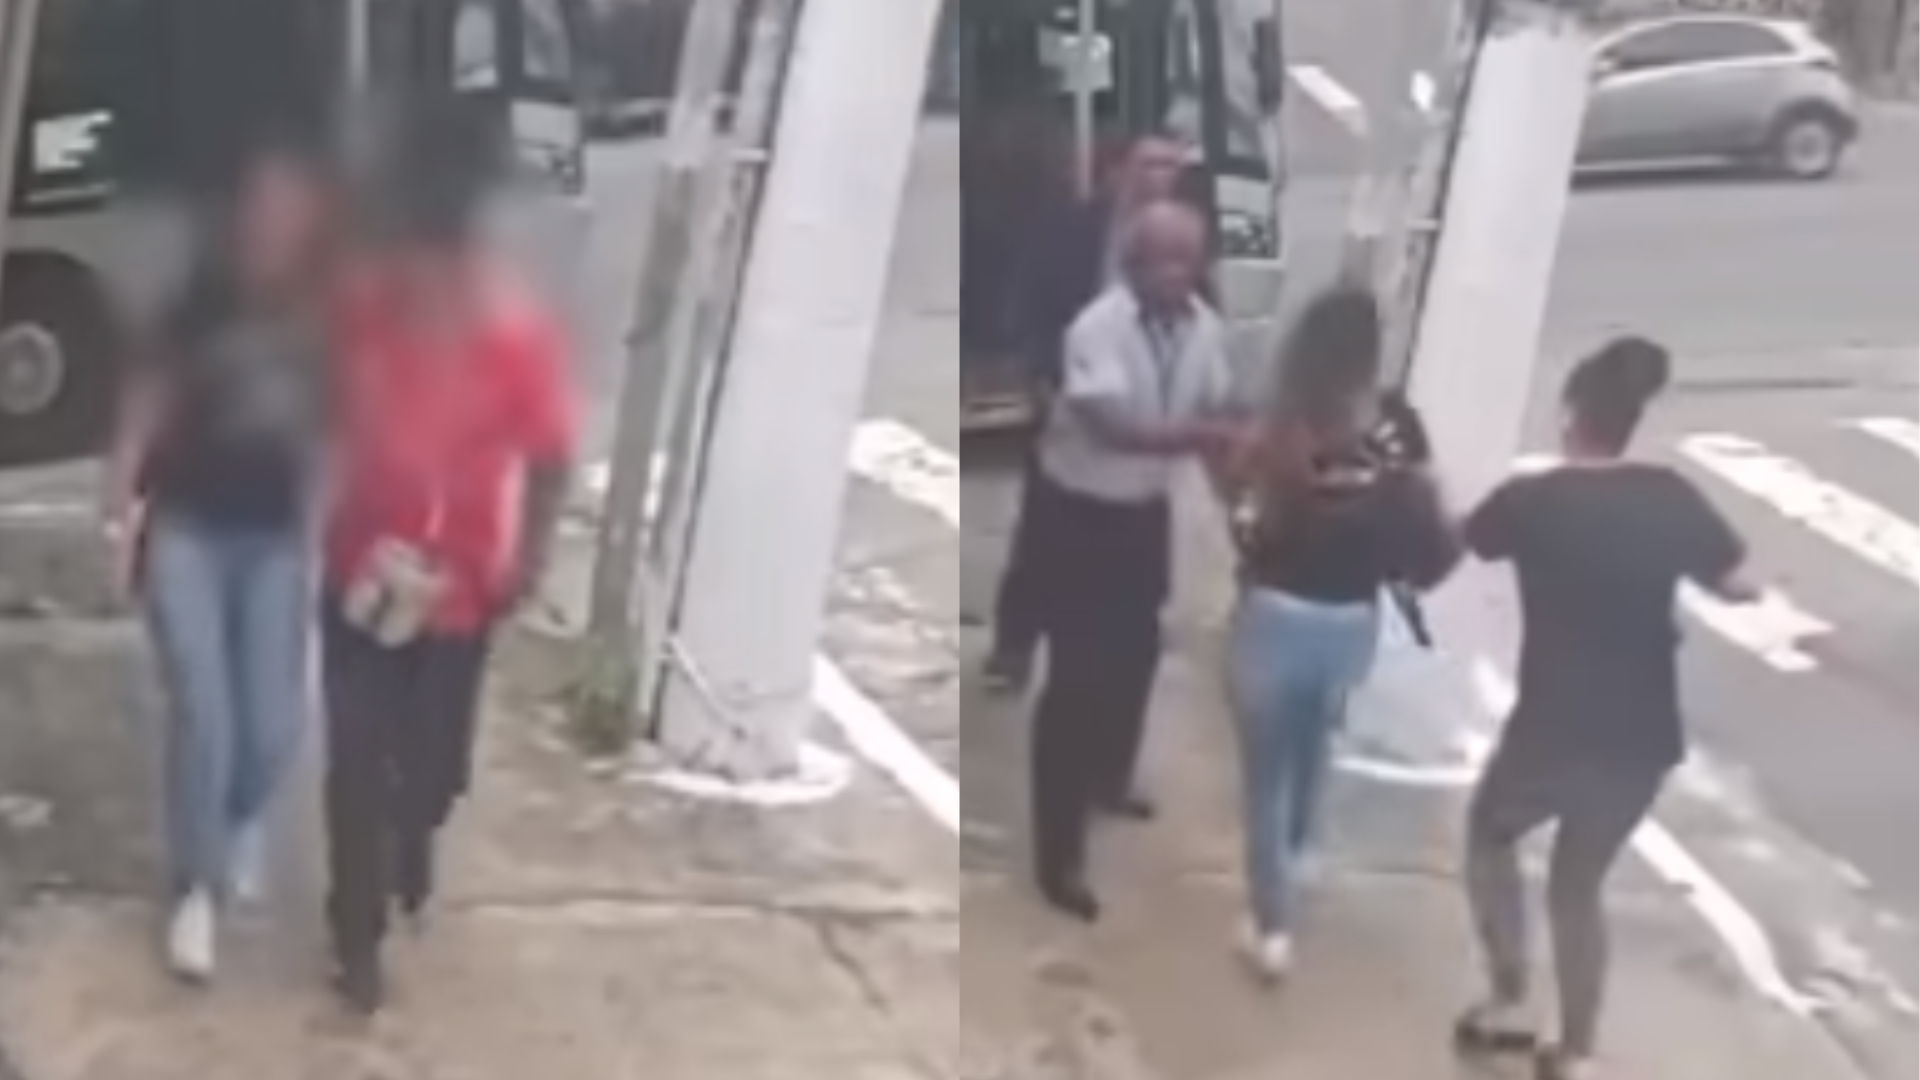 Mulher salva por motorista de ônibus em SP detalha ameaça e momento de terror durante tentativa de estupro: “Chegou a furar minhas costas”